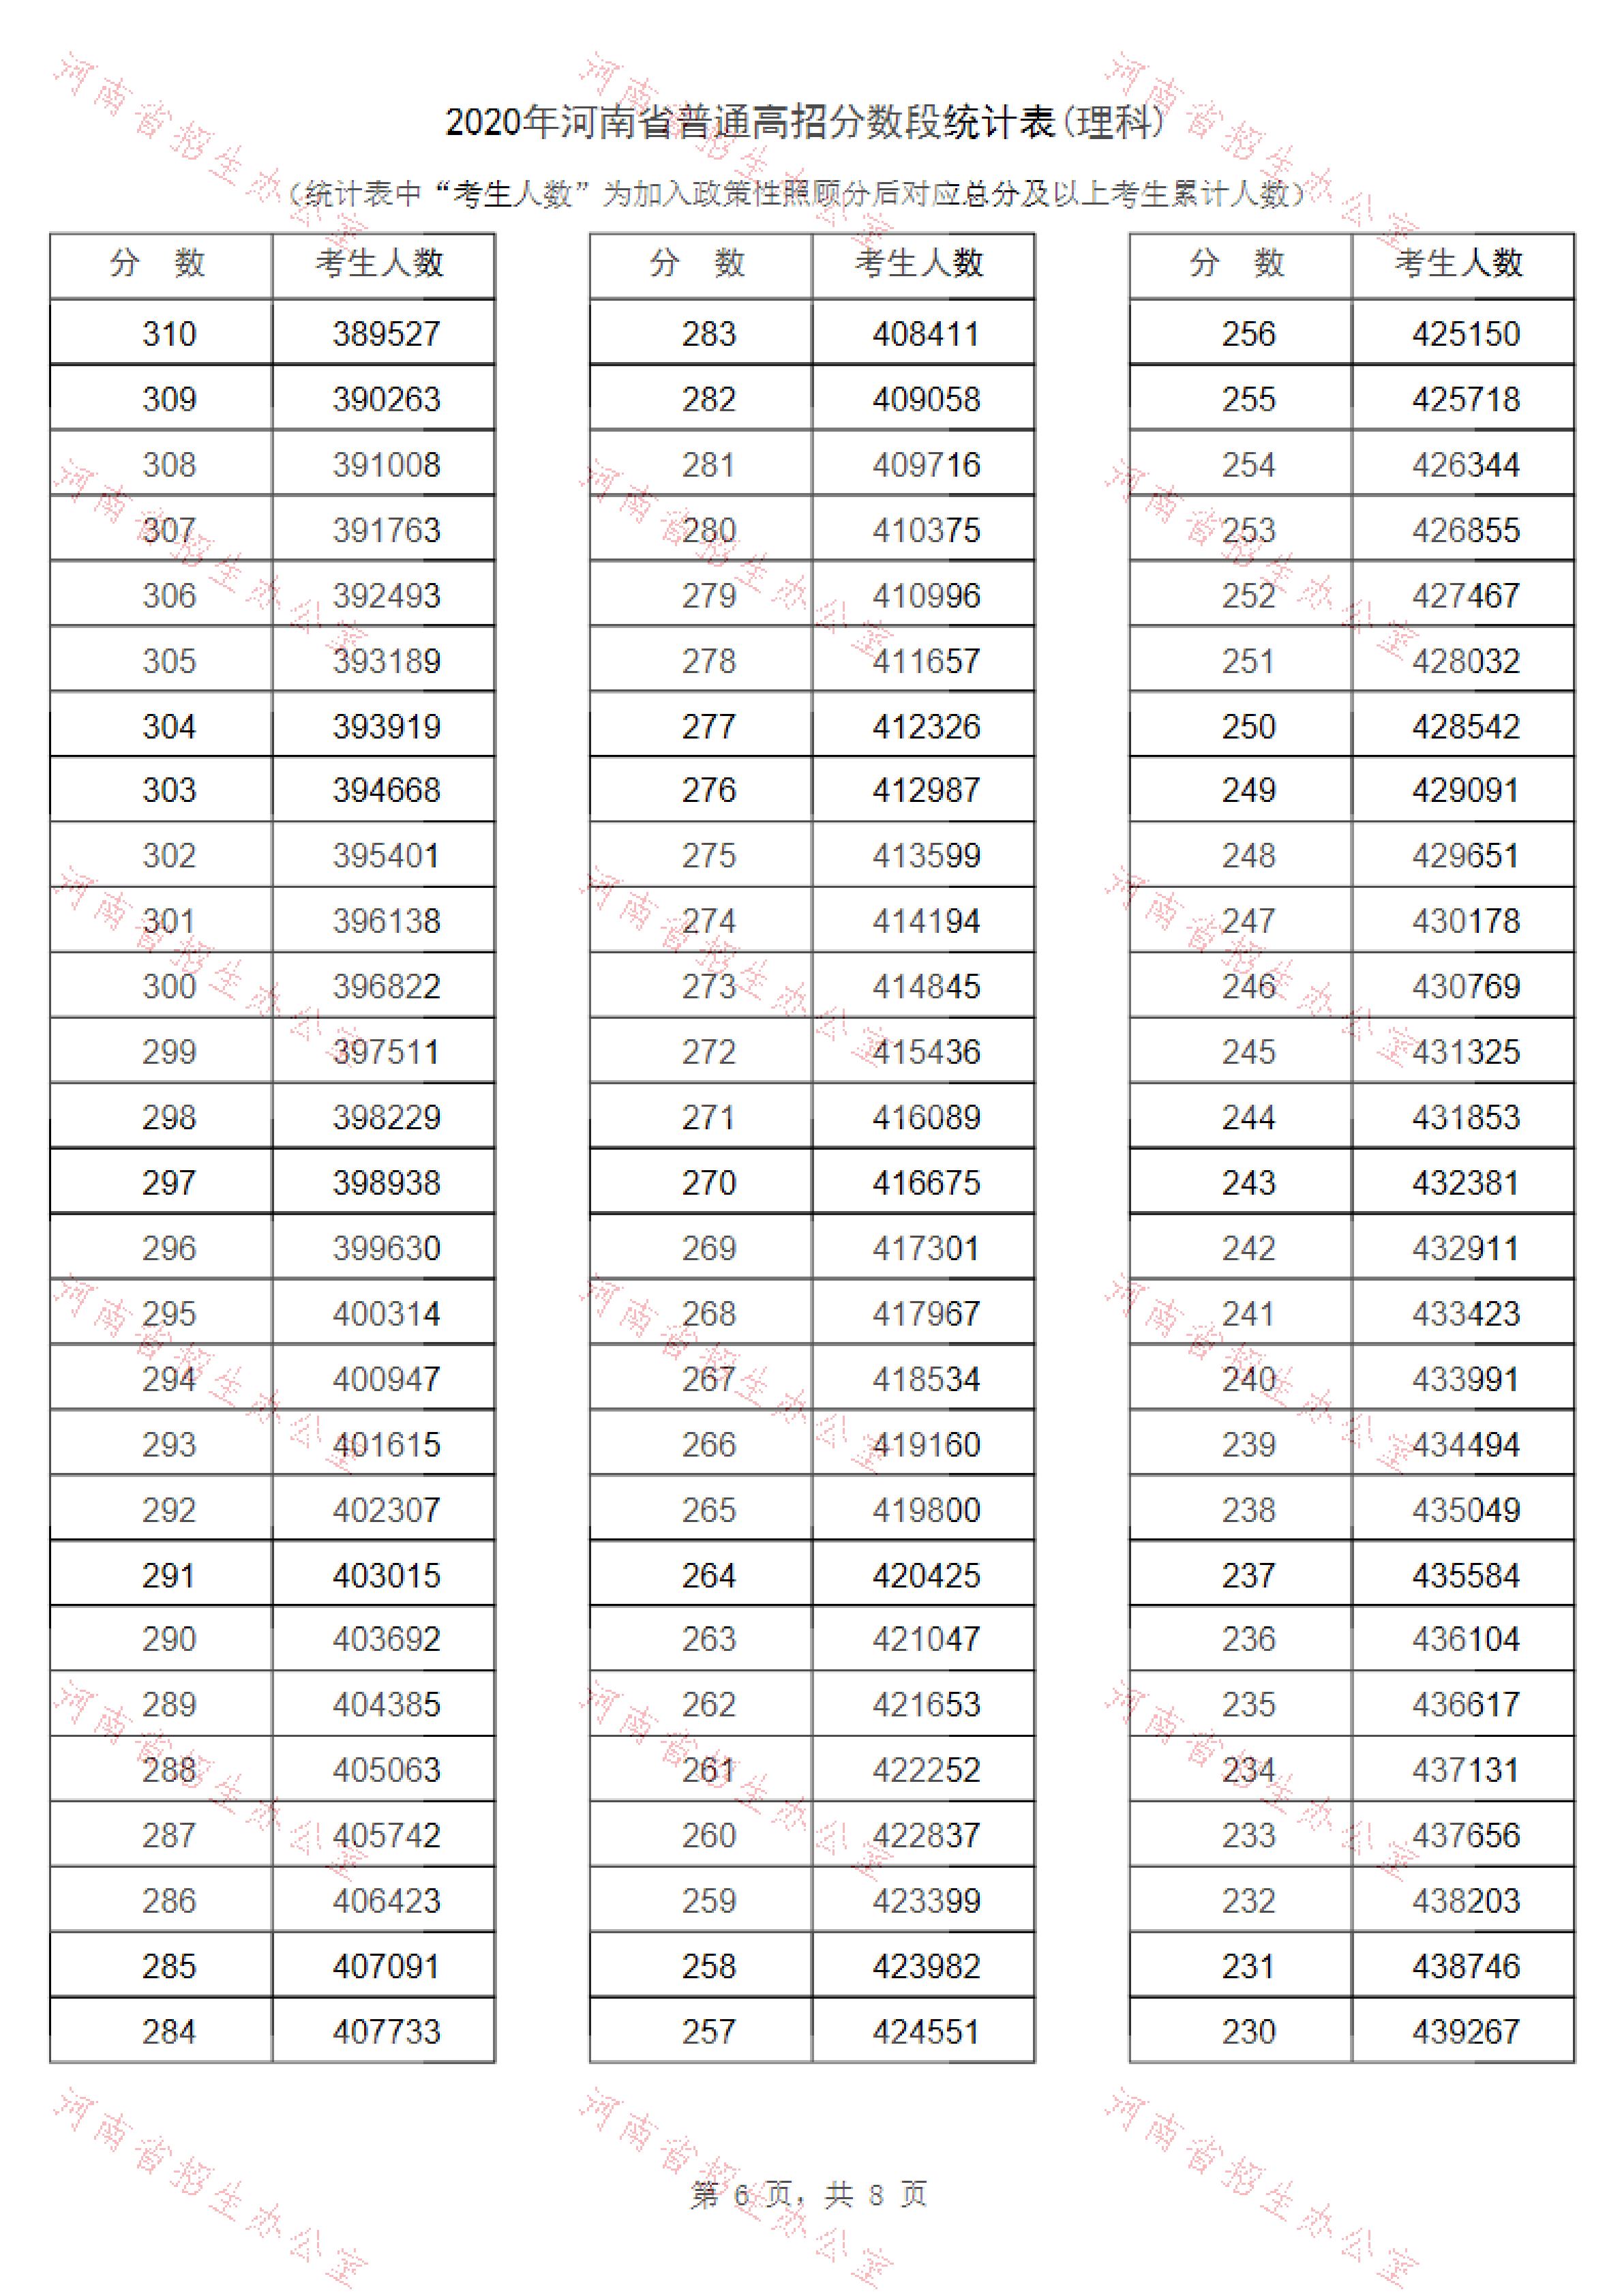 2020年河南省普通高招分数段统计表(理科)_05.png